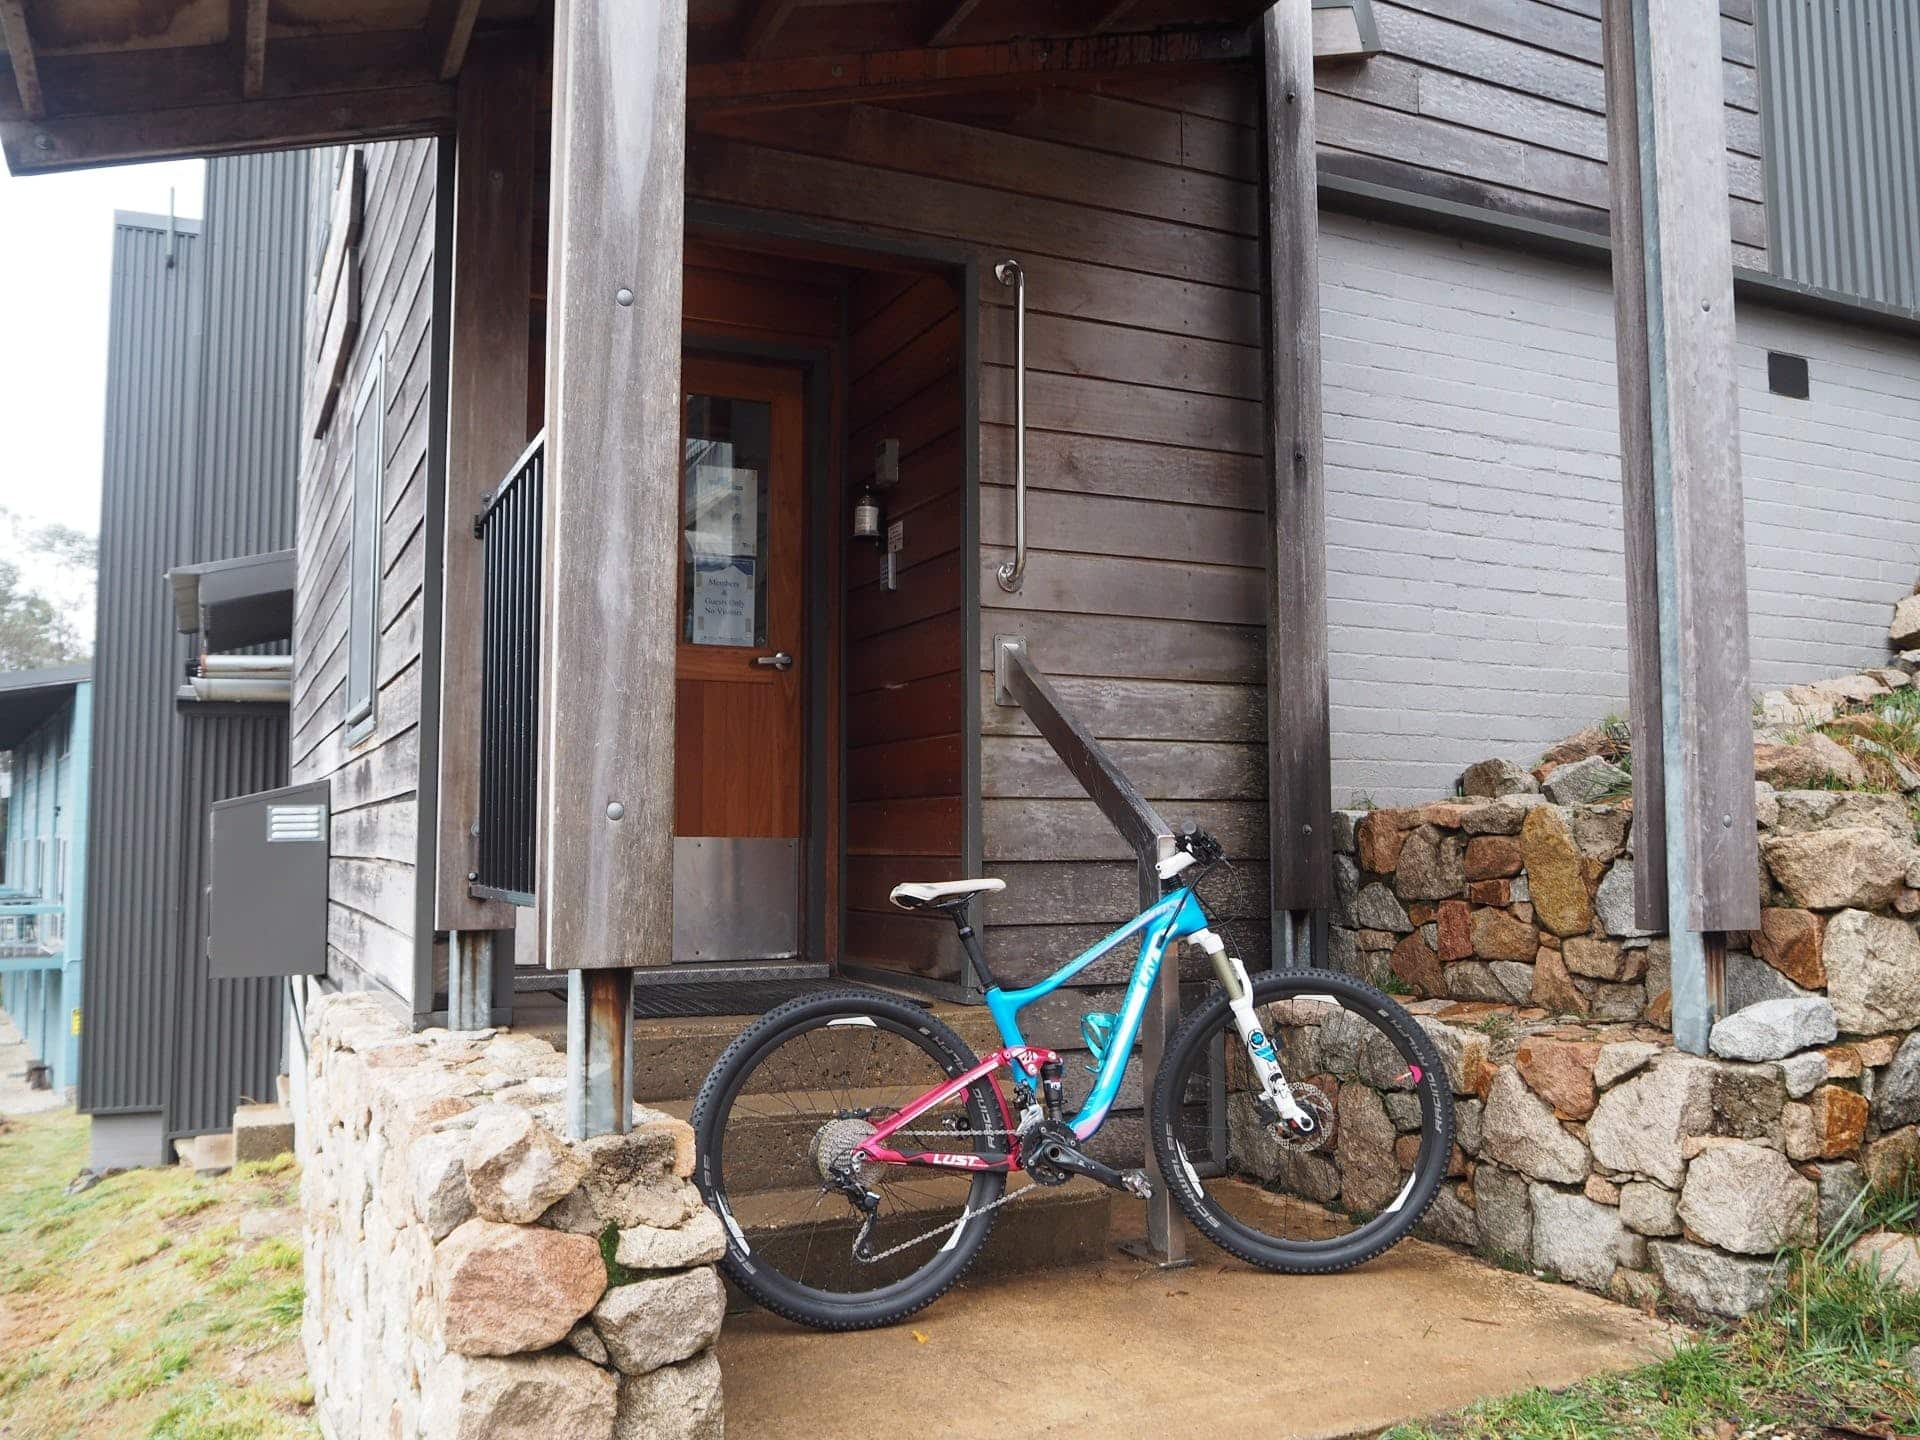 Mountian bike at the front door